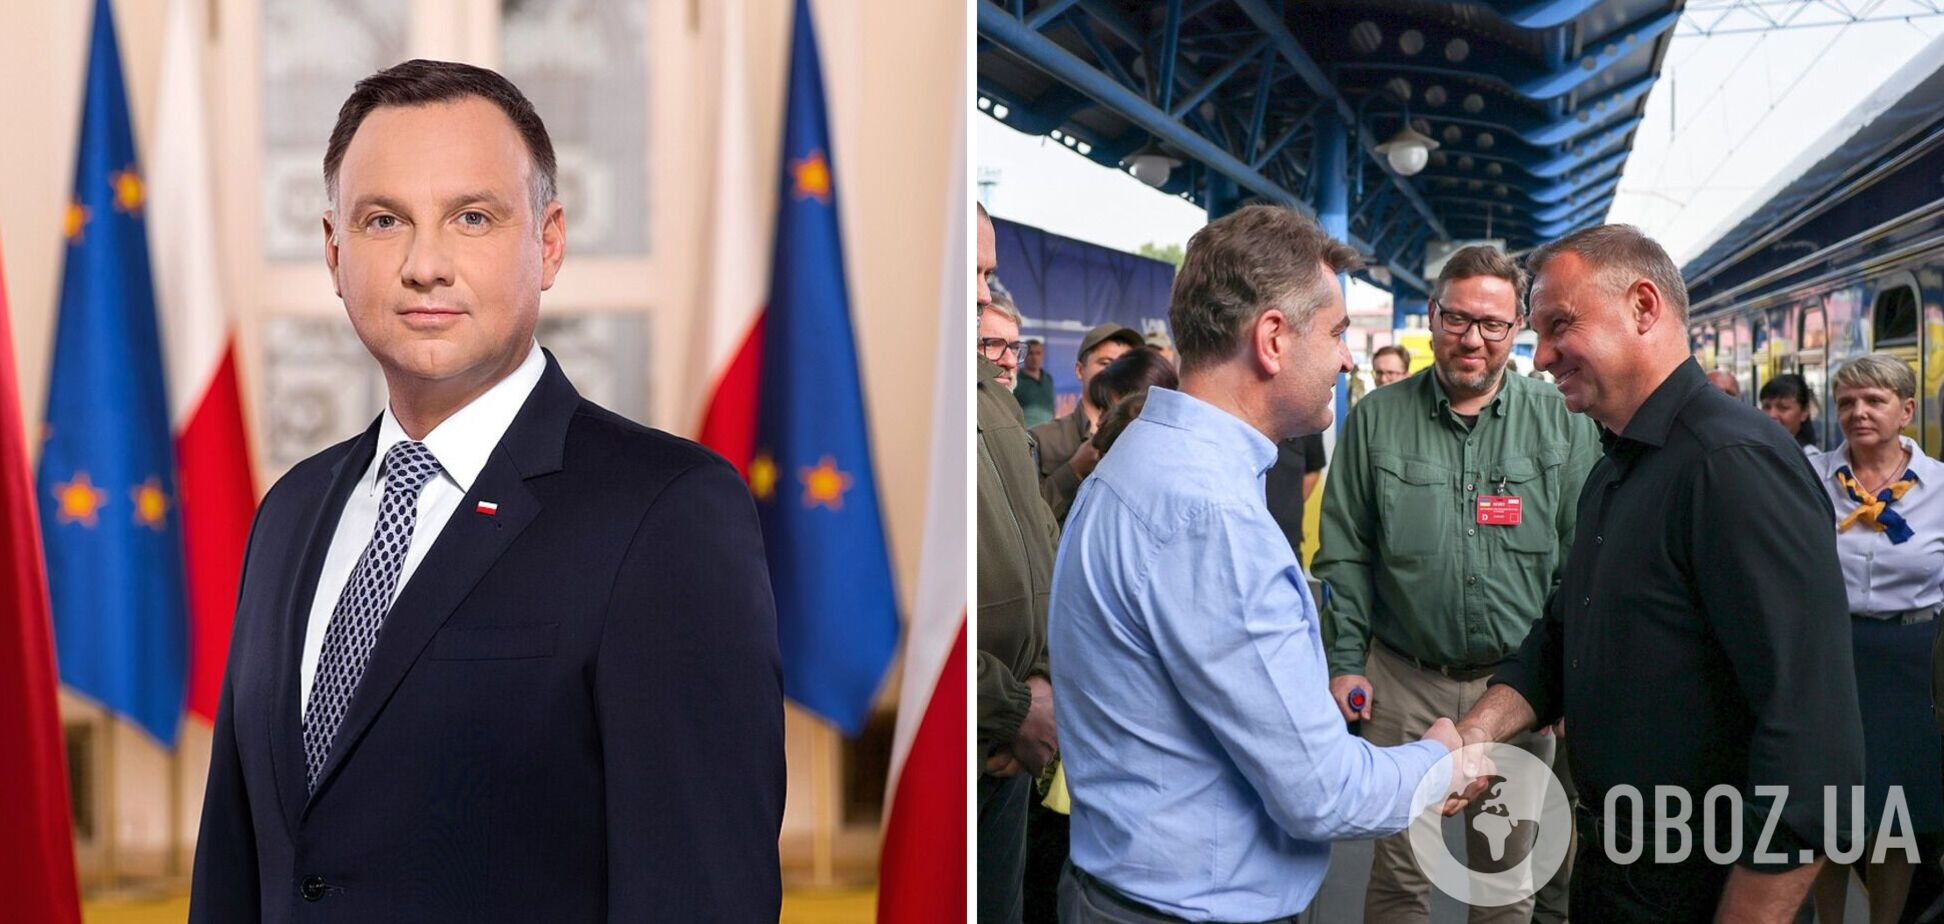 Дуда прибыл с визитом в Киев и провел встречу с Зеленским. Фото и видео